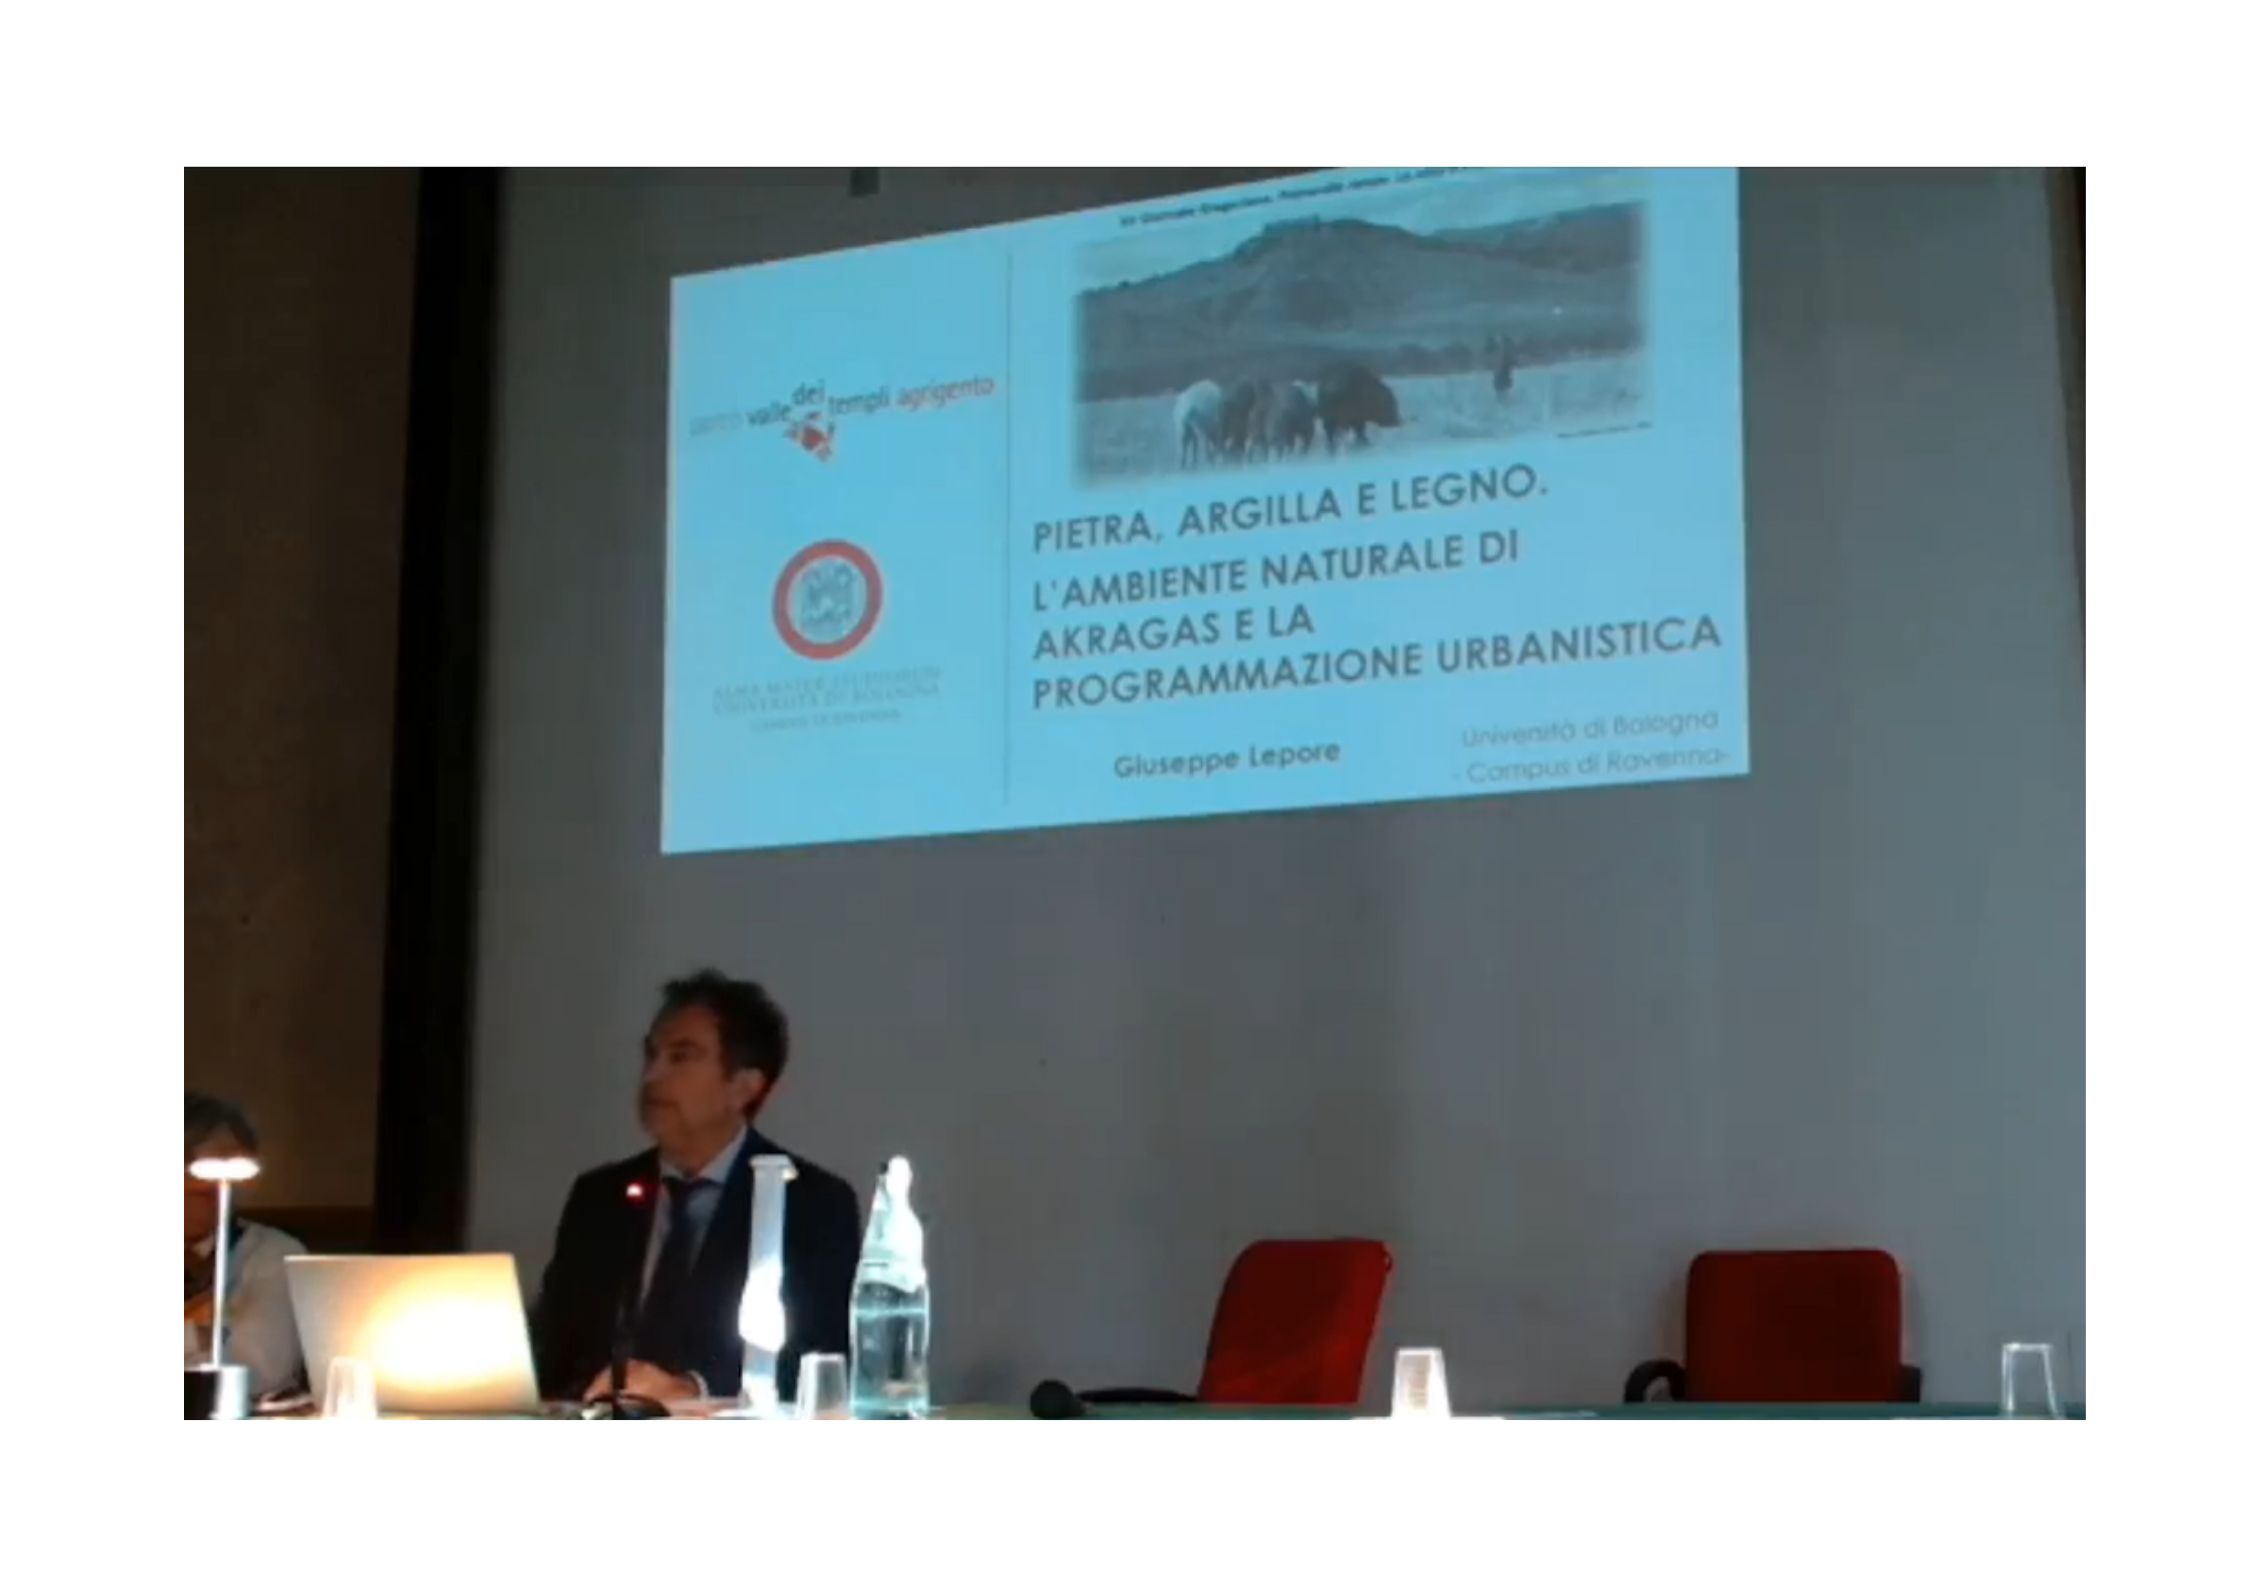 Il prof. Giuseppe Lepore durante l'esposizione del suo contributo dal titolo: "Pietra, argilla e legno. L'ambiente naturale di Akragas e la programmazione urbanistica".